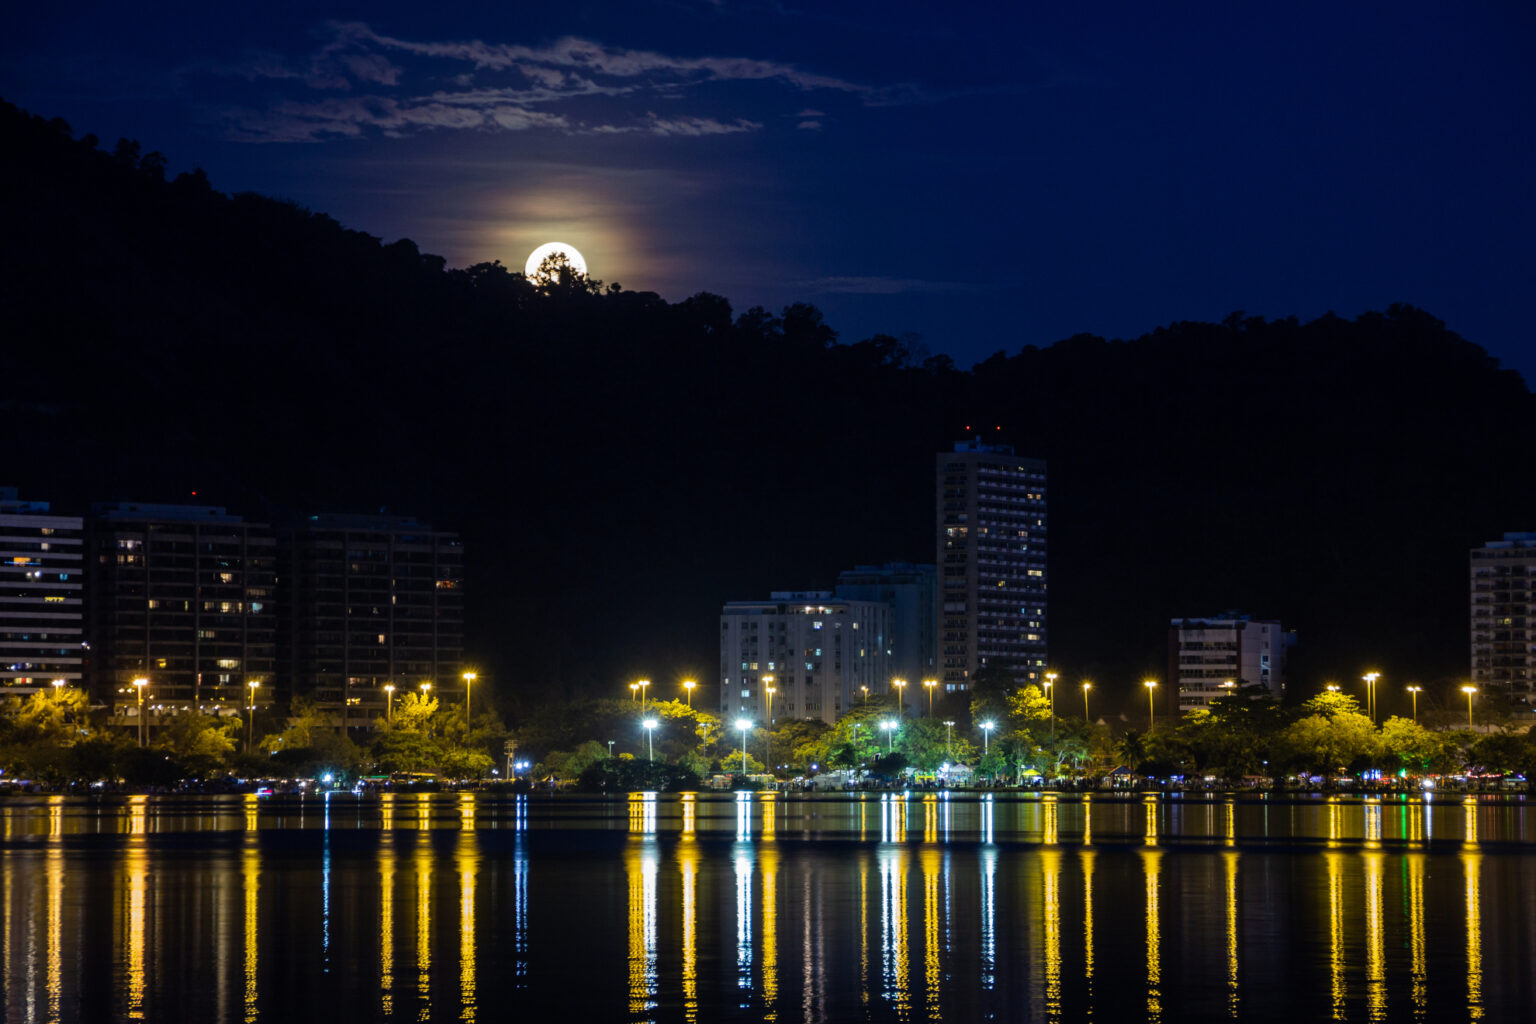 born of the full moon, in Lagoon Rodrigo de freitas in rio de janeiro Brazil